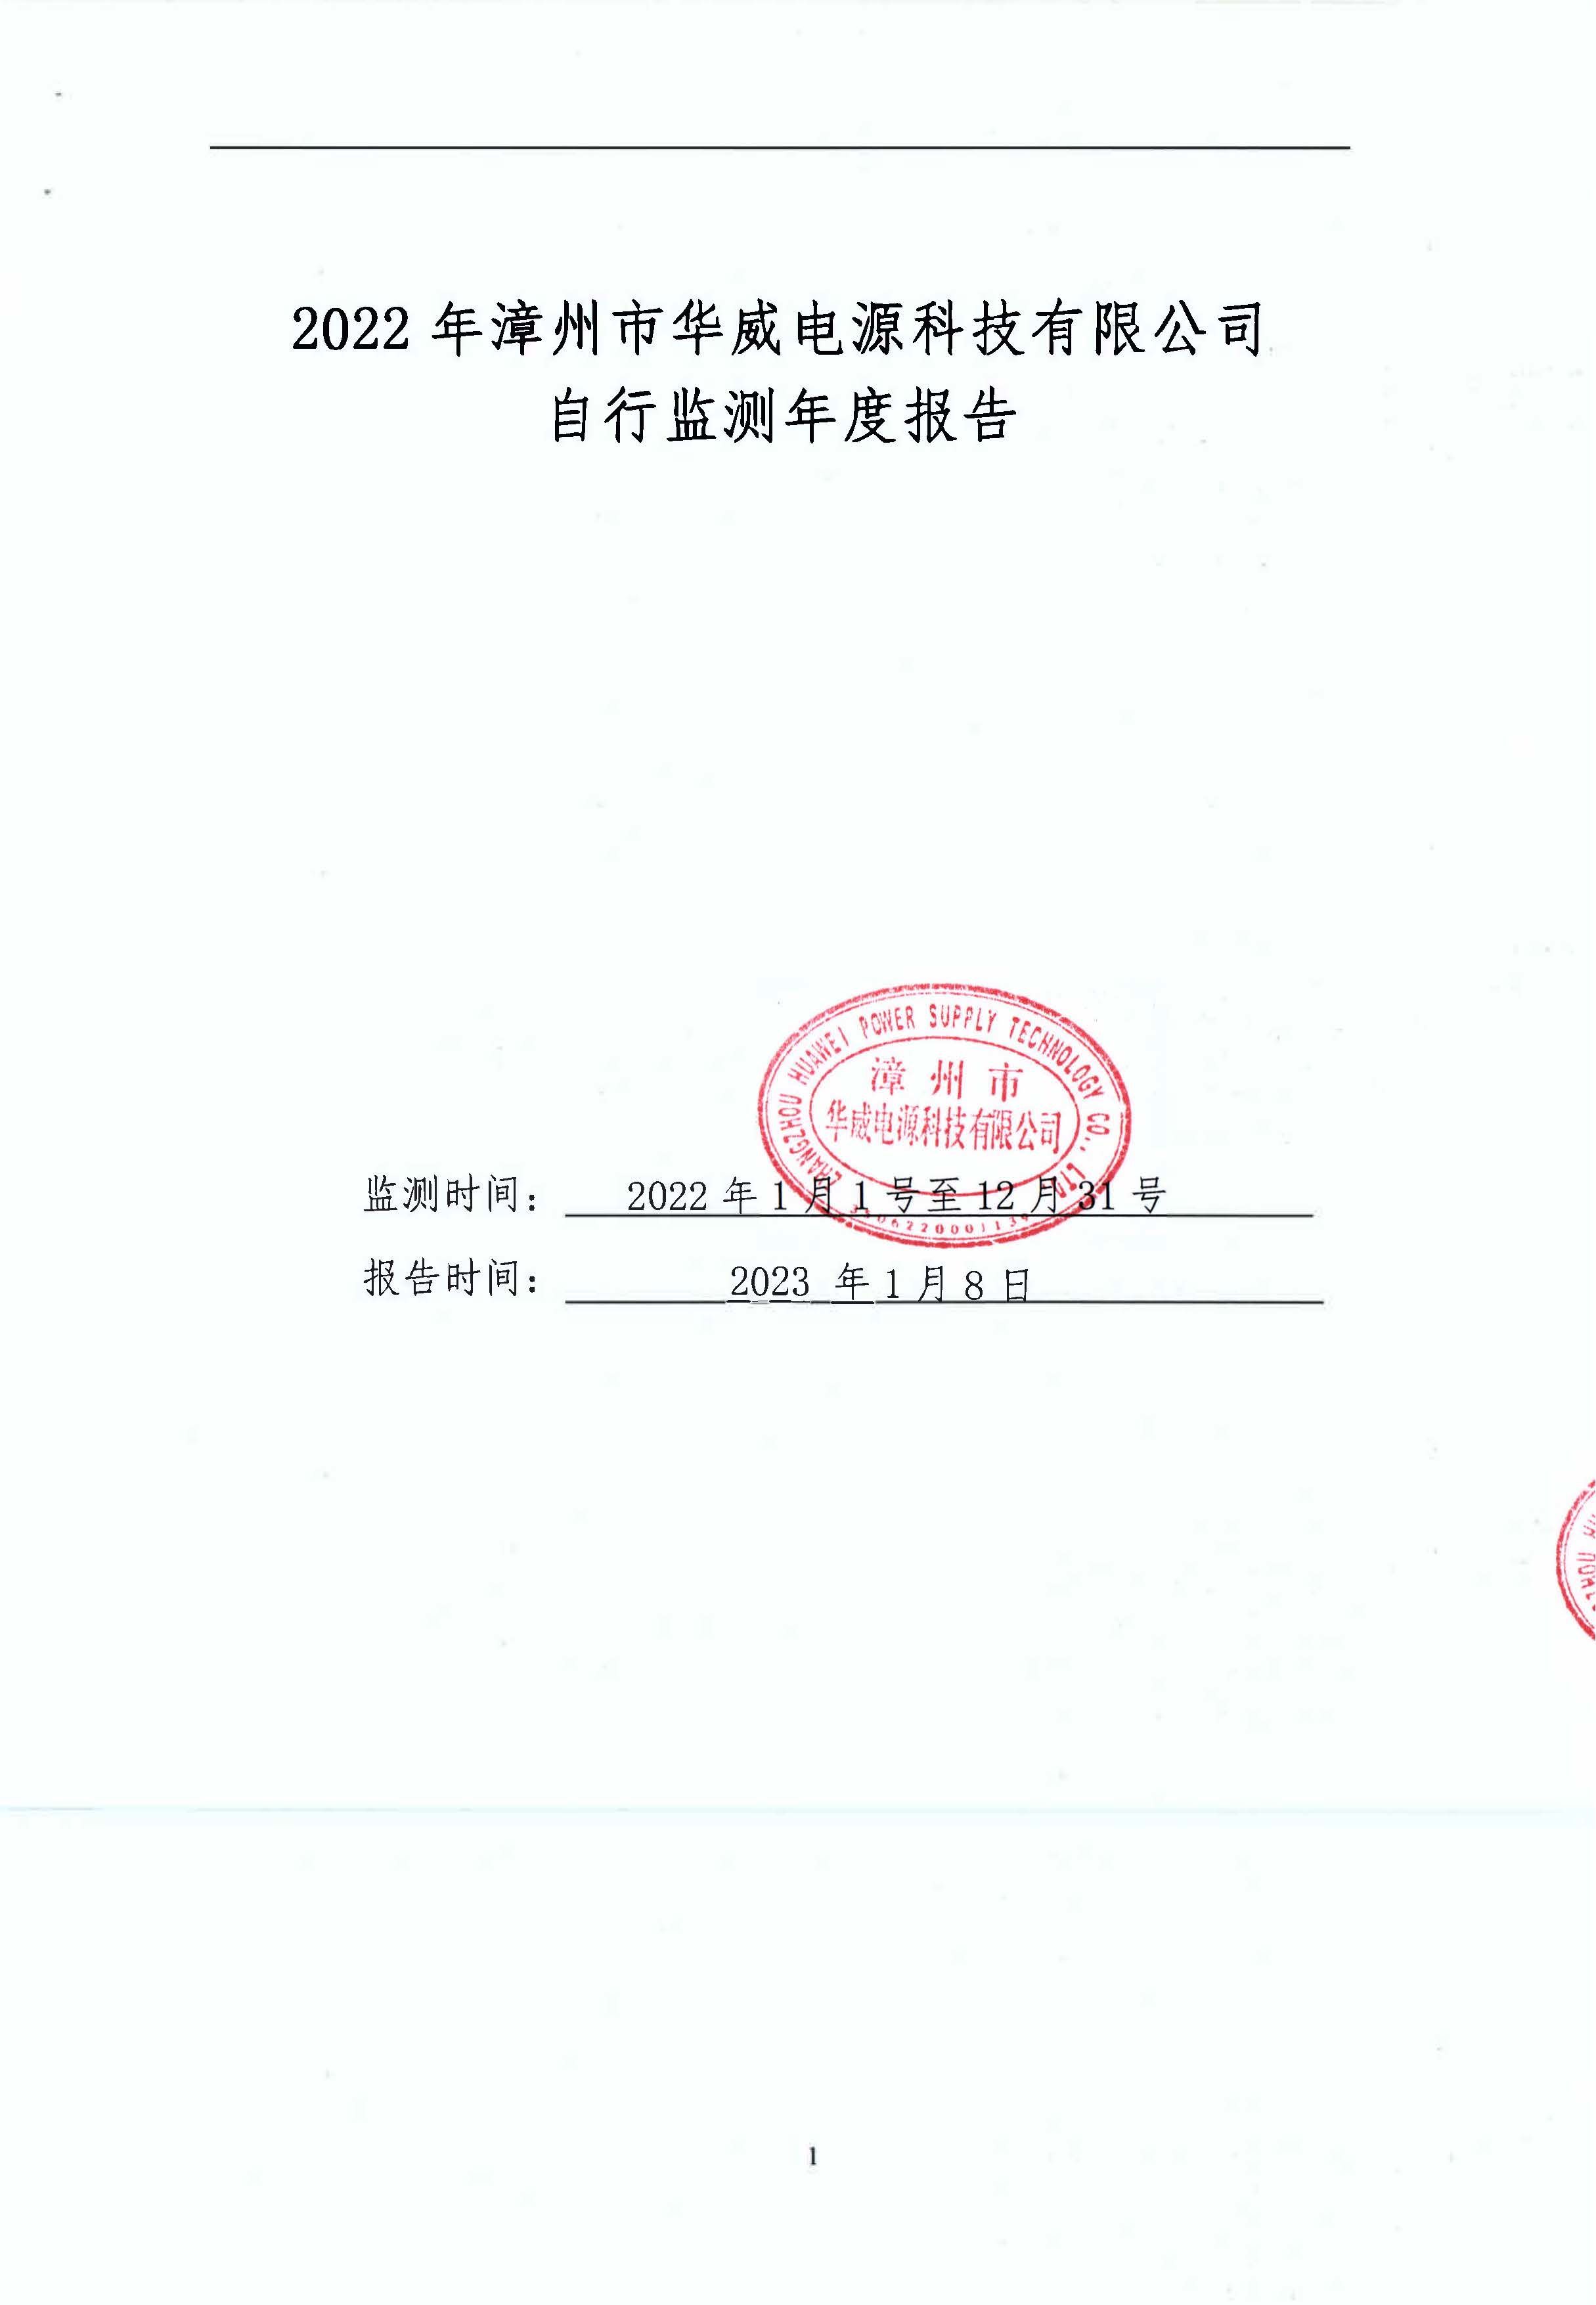 2023 年漳州市華威電源科技有限公司自行監測年度報告